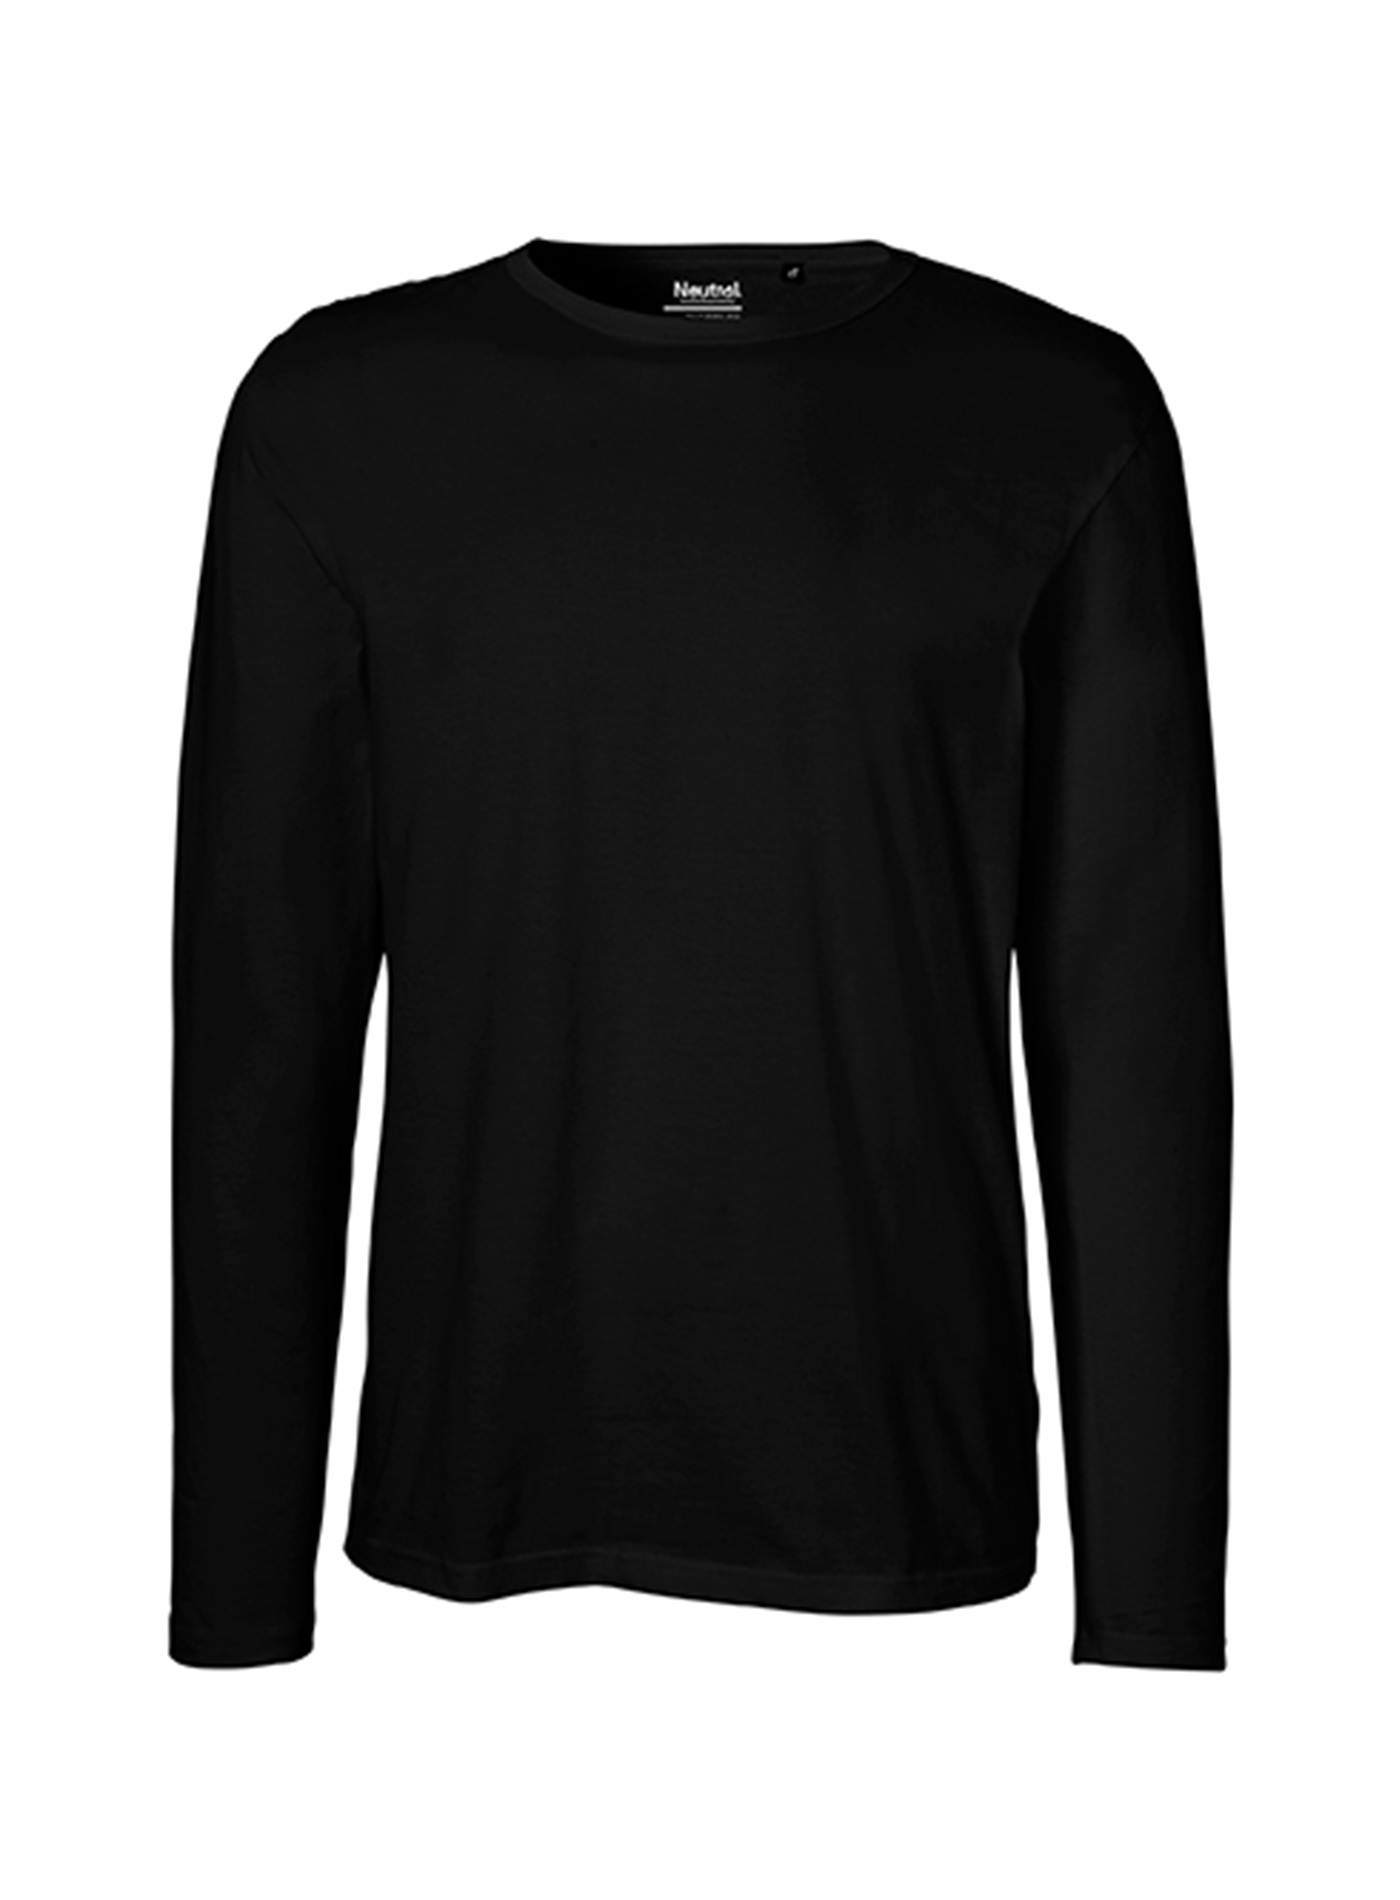 Pánské tričko s dlouhým rukávem Neutral - černá L